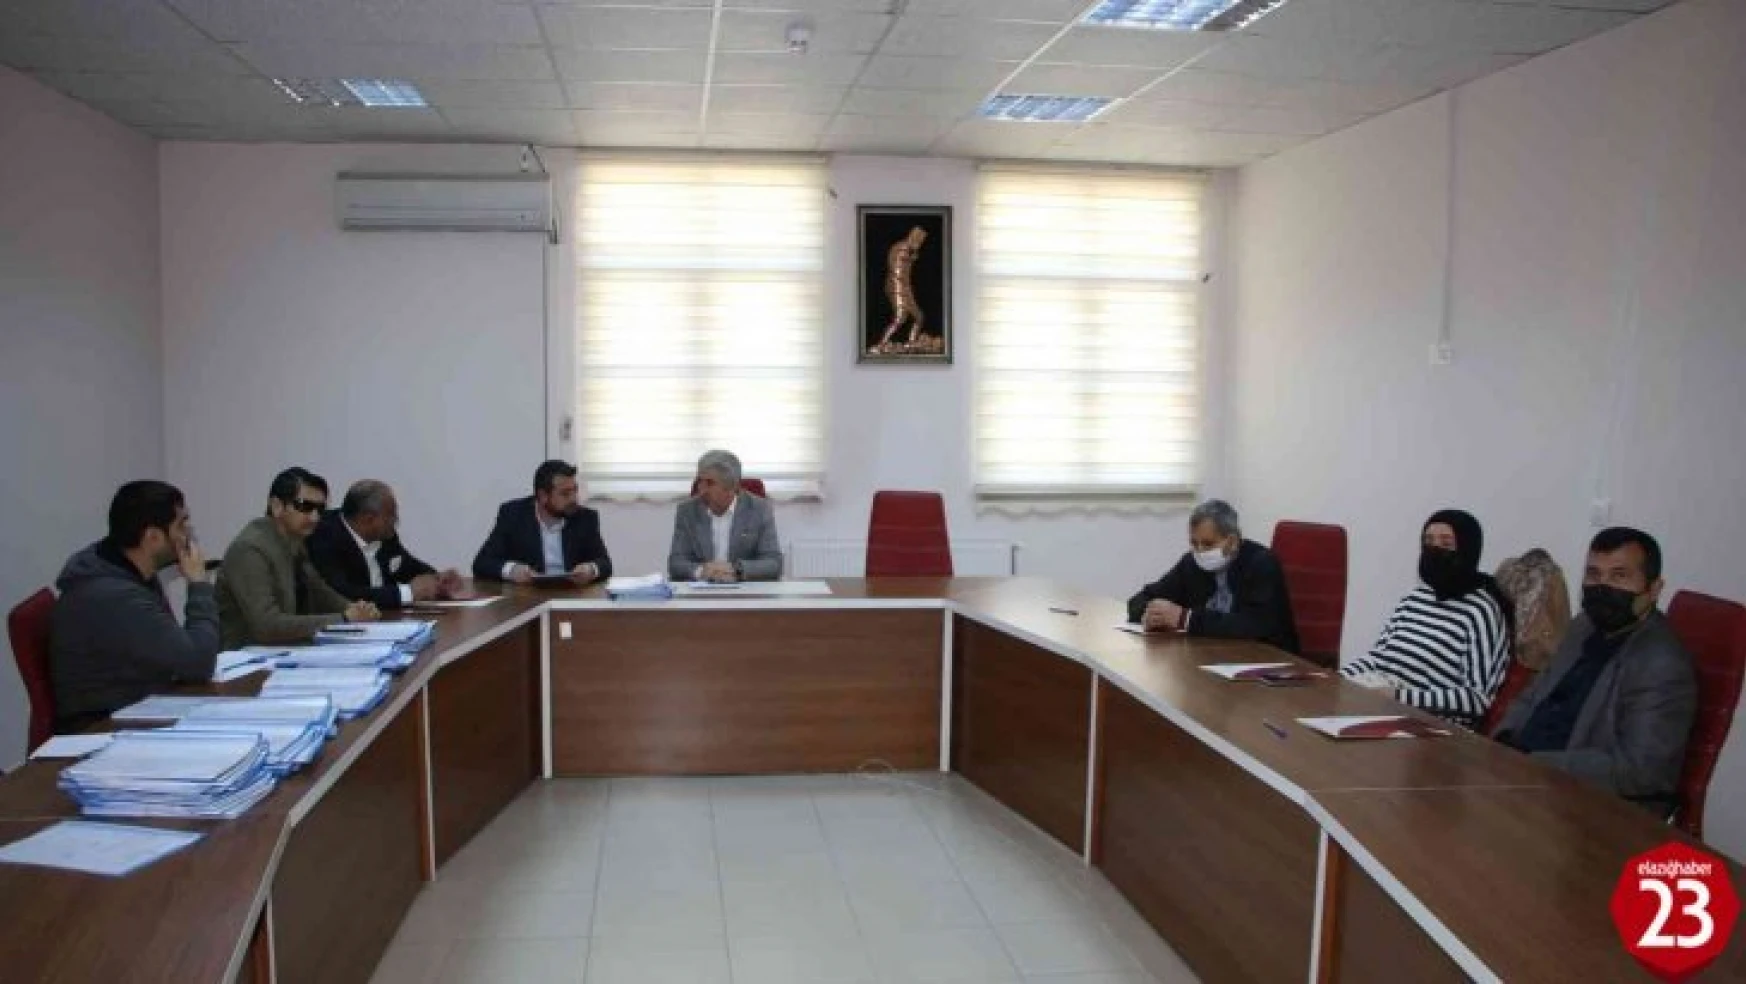 Elazığ'da Erişilebilirlik İzleme ve Denetleme Komisyon Toplantısı yapıldı